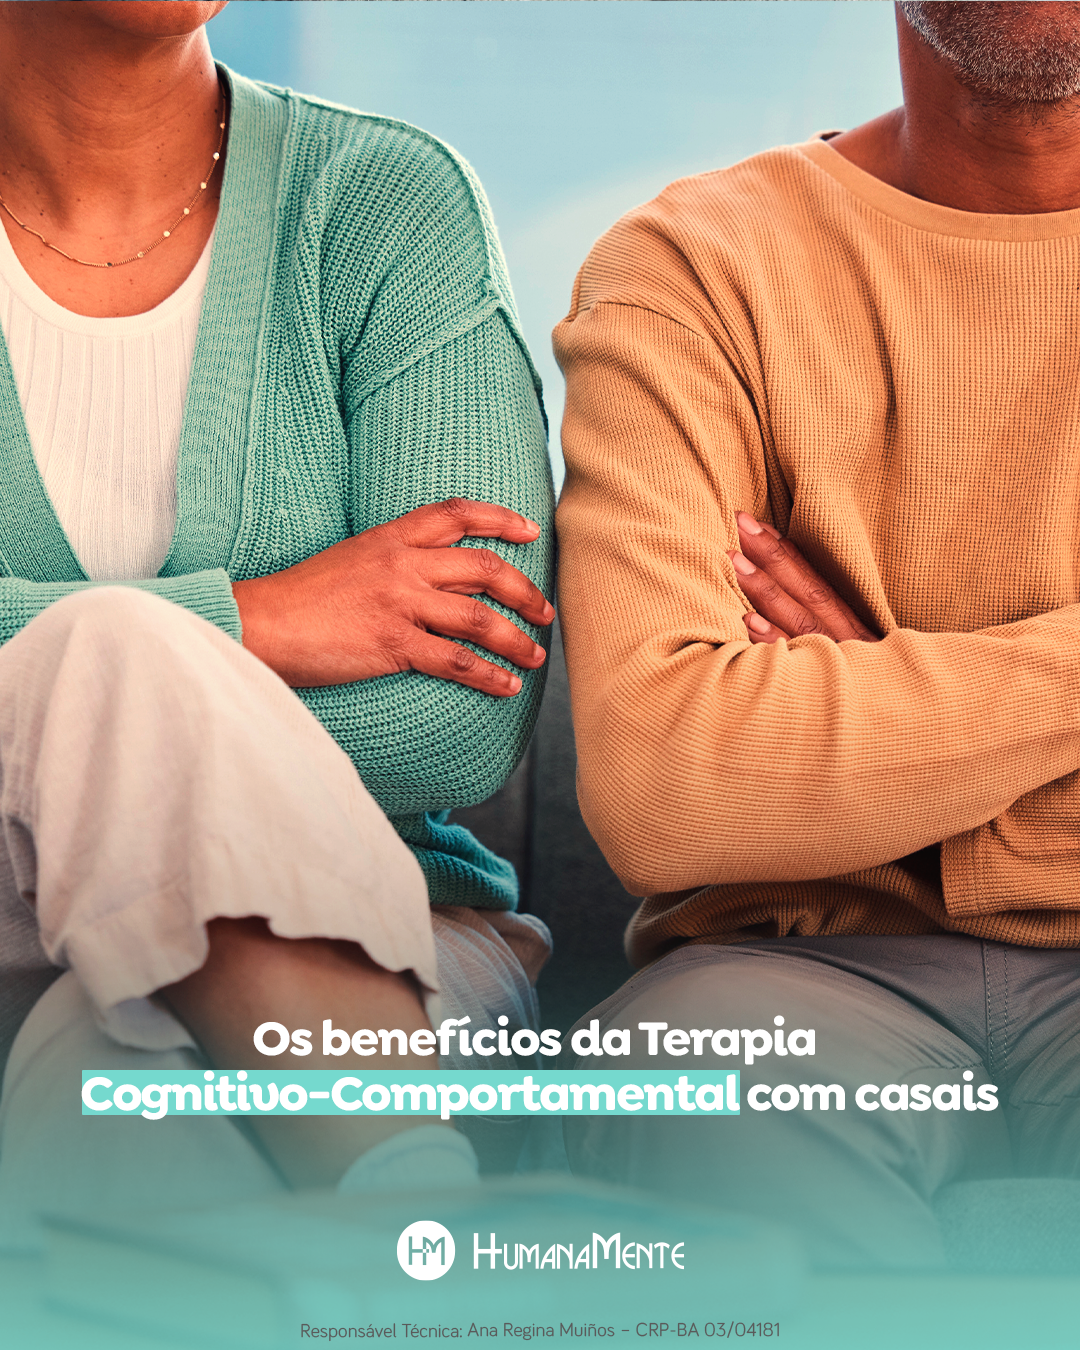 Os benefícios da Terapia Cognitivo-Comportamental com casais